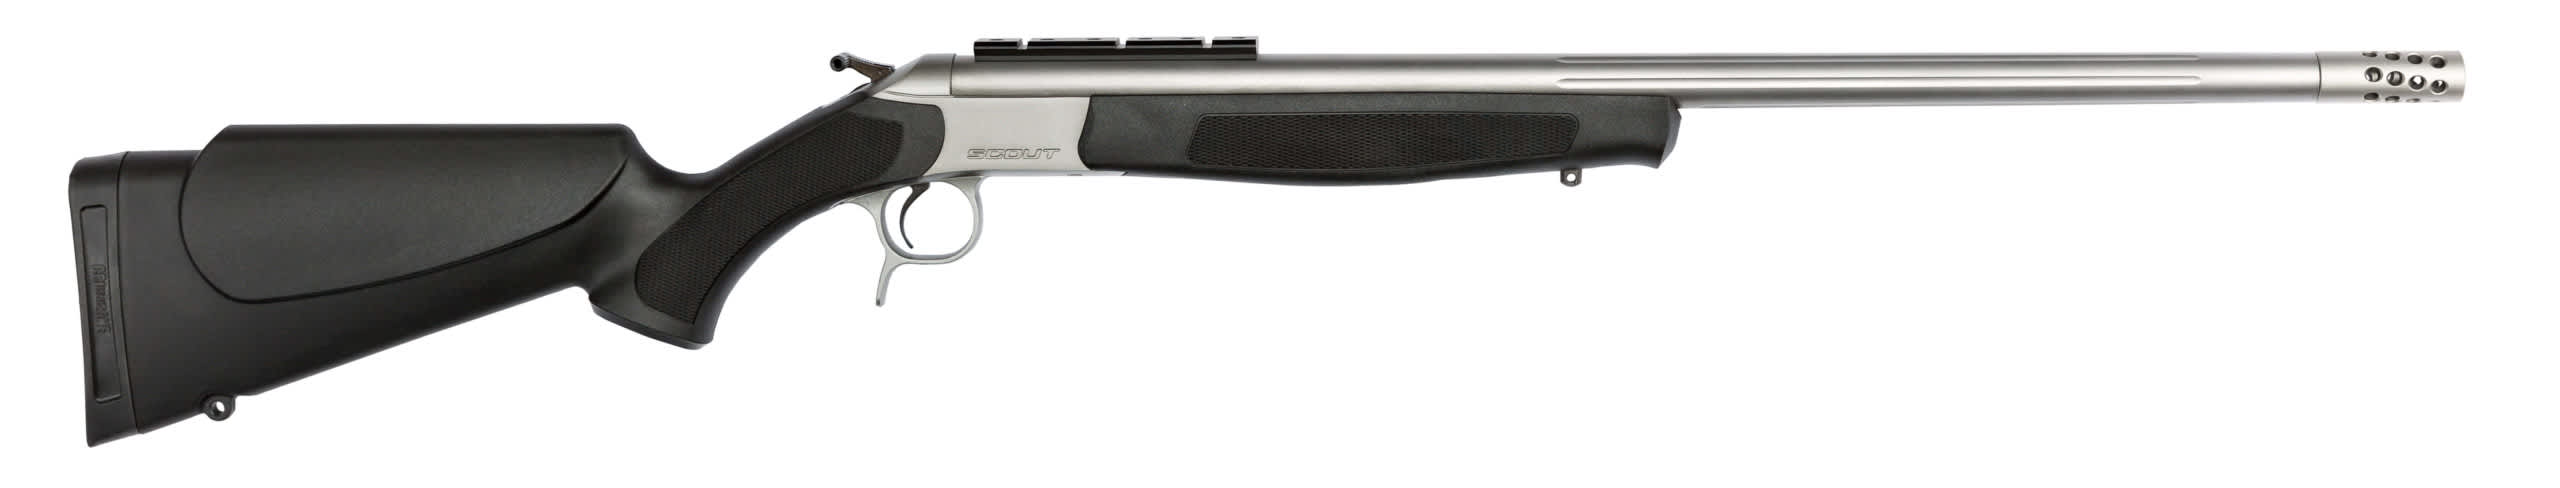 CVA SCOUT Stainless Single-Shot Rifle